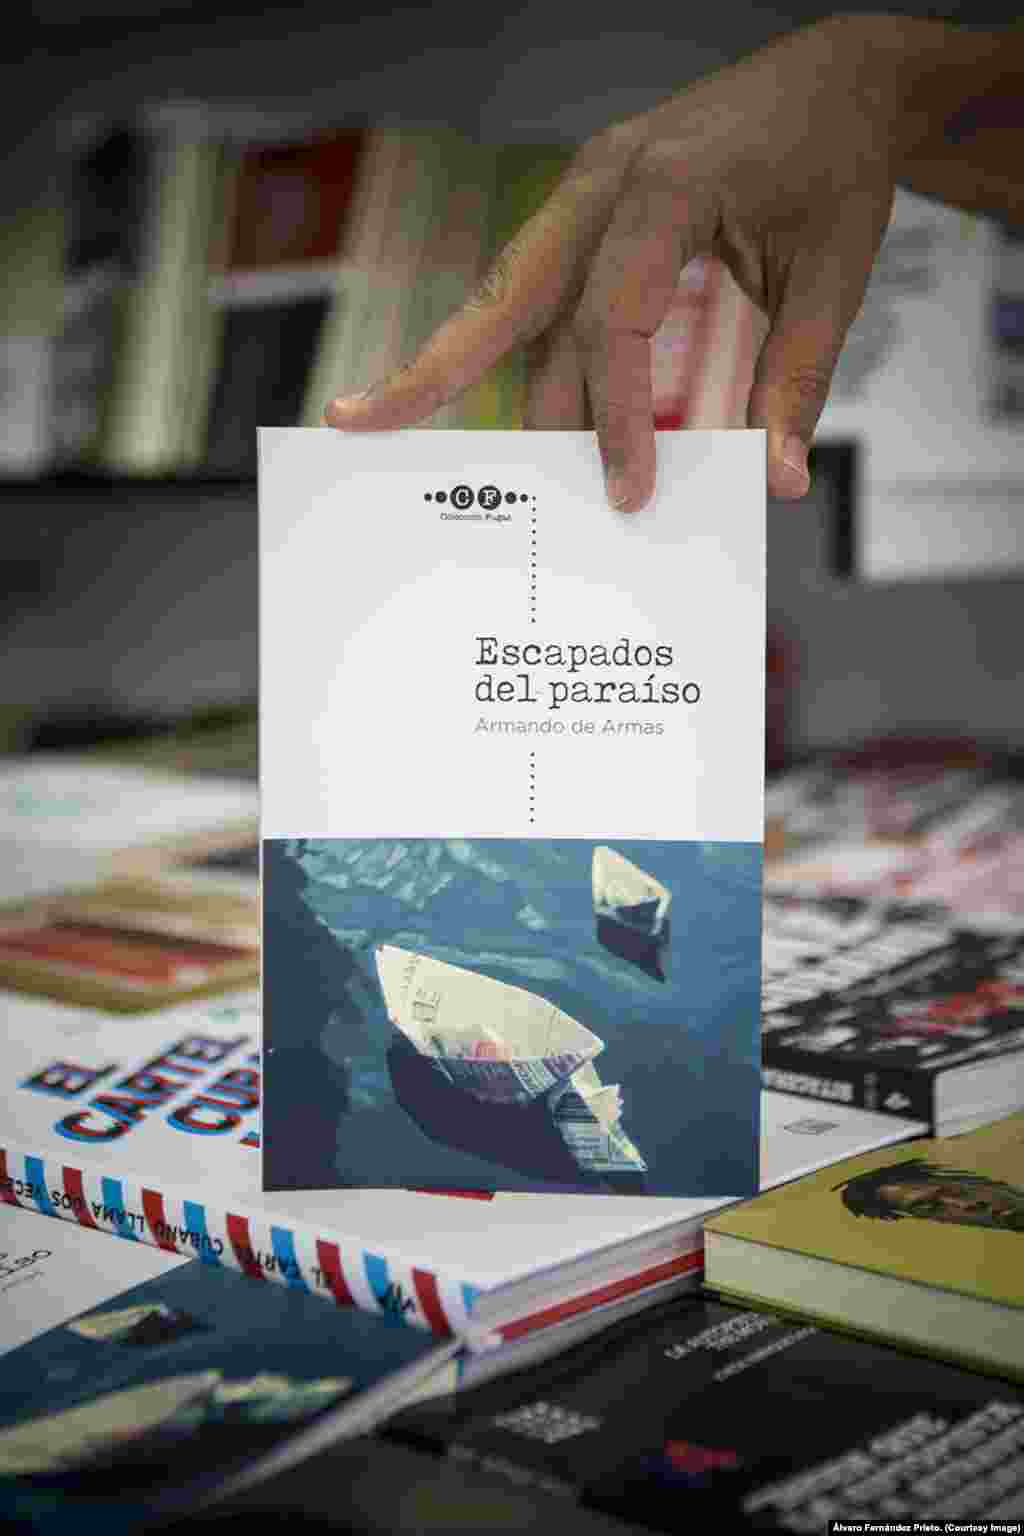 La novela "Escapados del paraíso" de Armando de Armas es el número cero de la Colección Fugas.